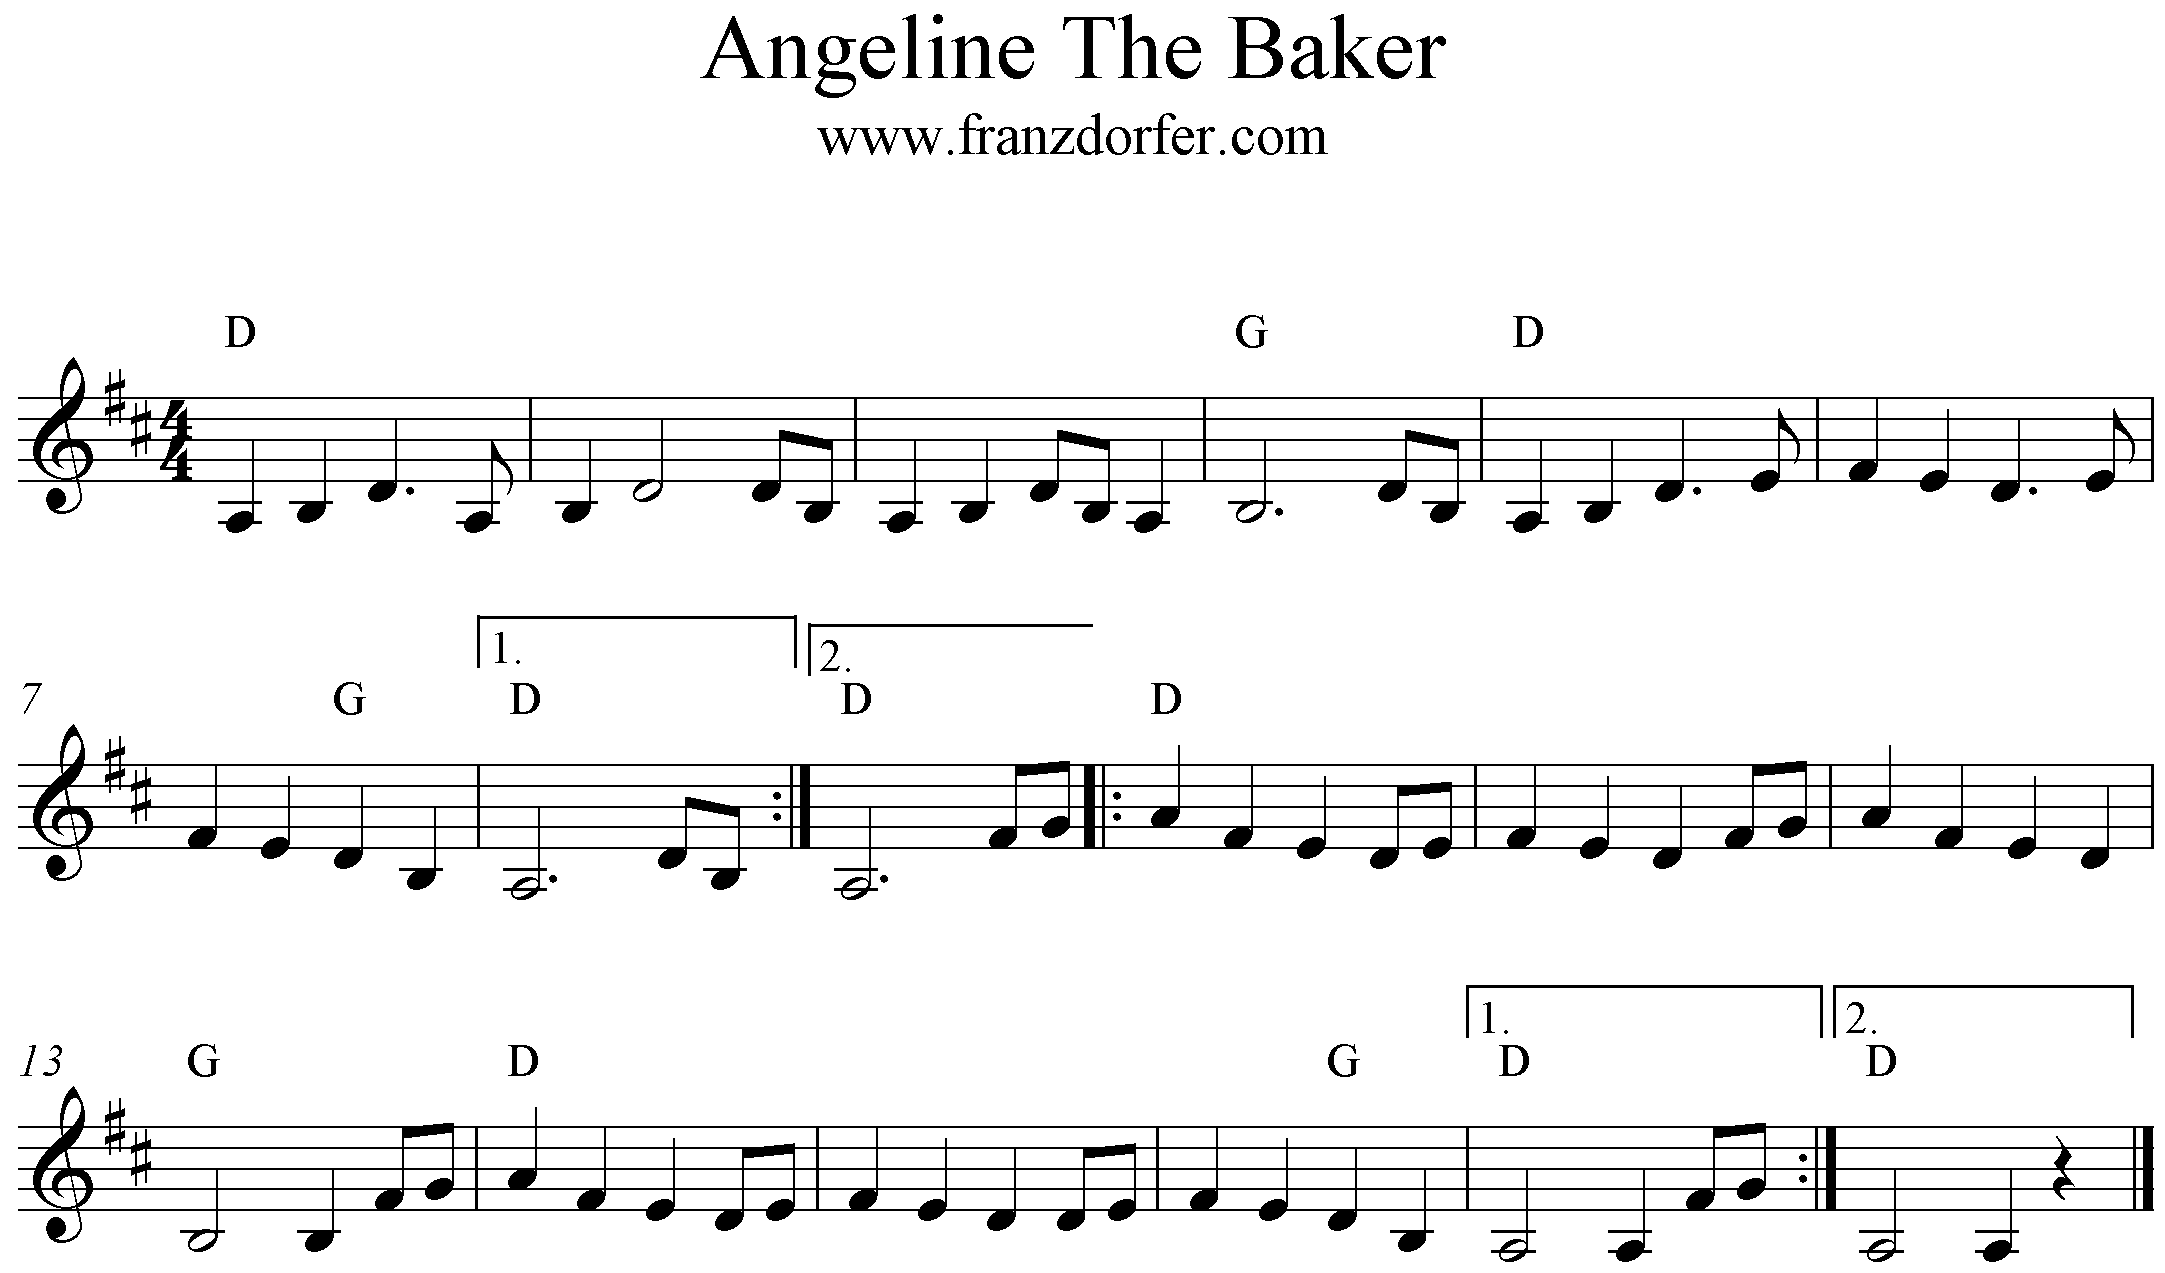 D-Major, Angeline The Baker